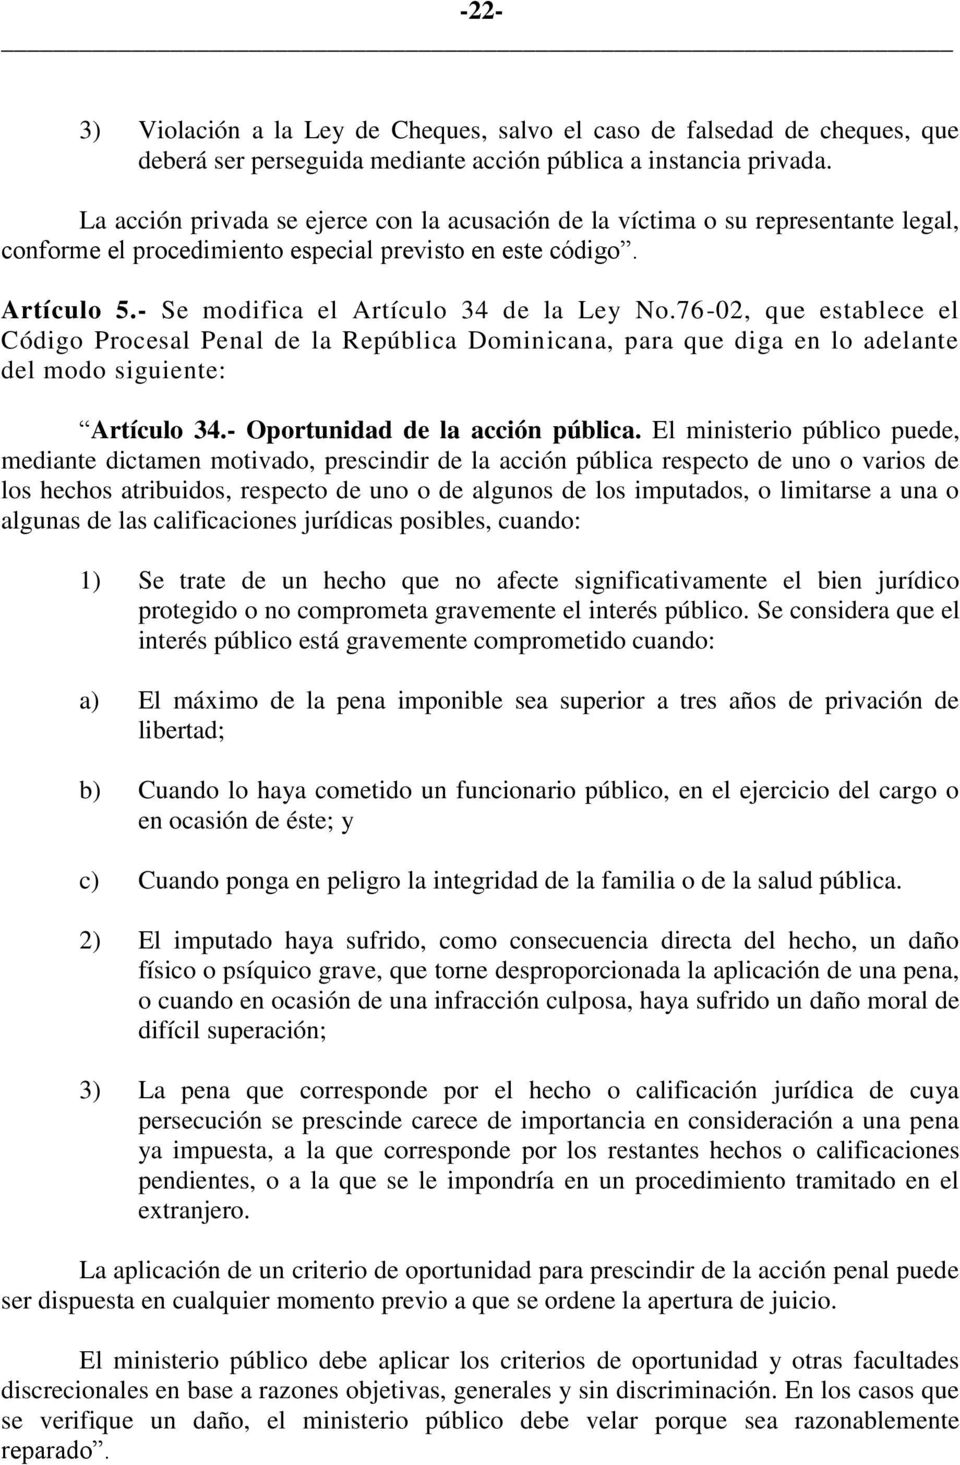 76-02, que establece el Artículo 34.- Oportunidad de la acción pública.